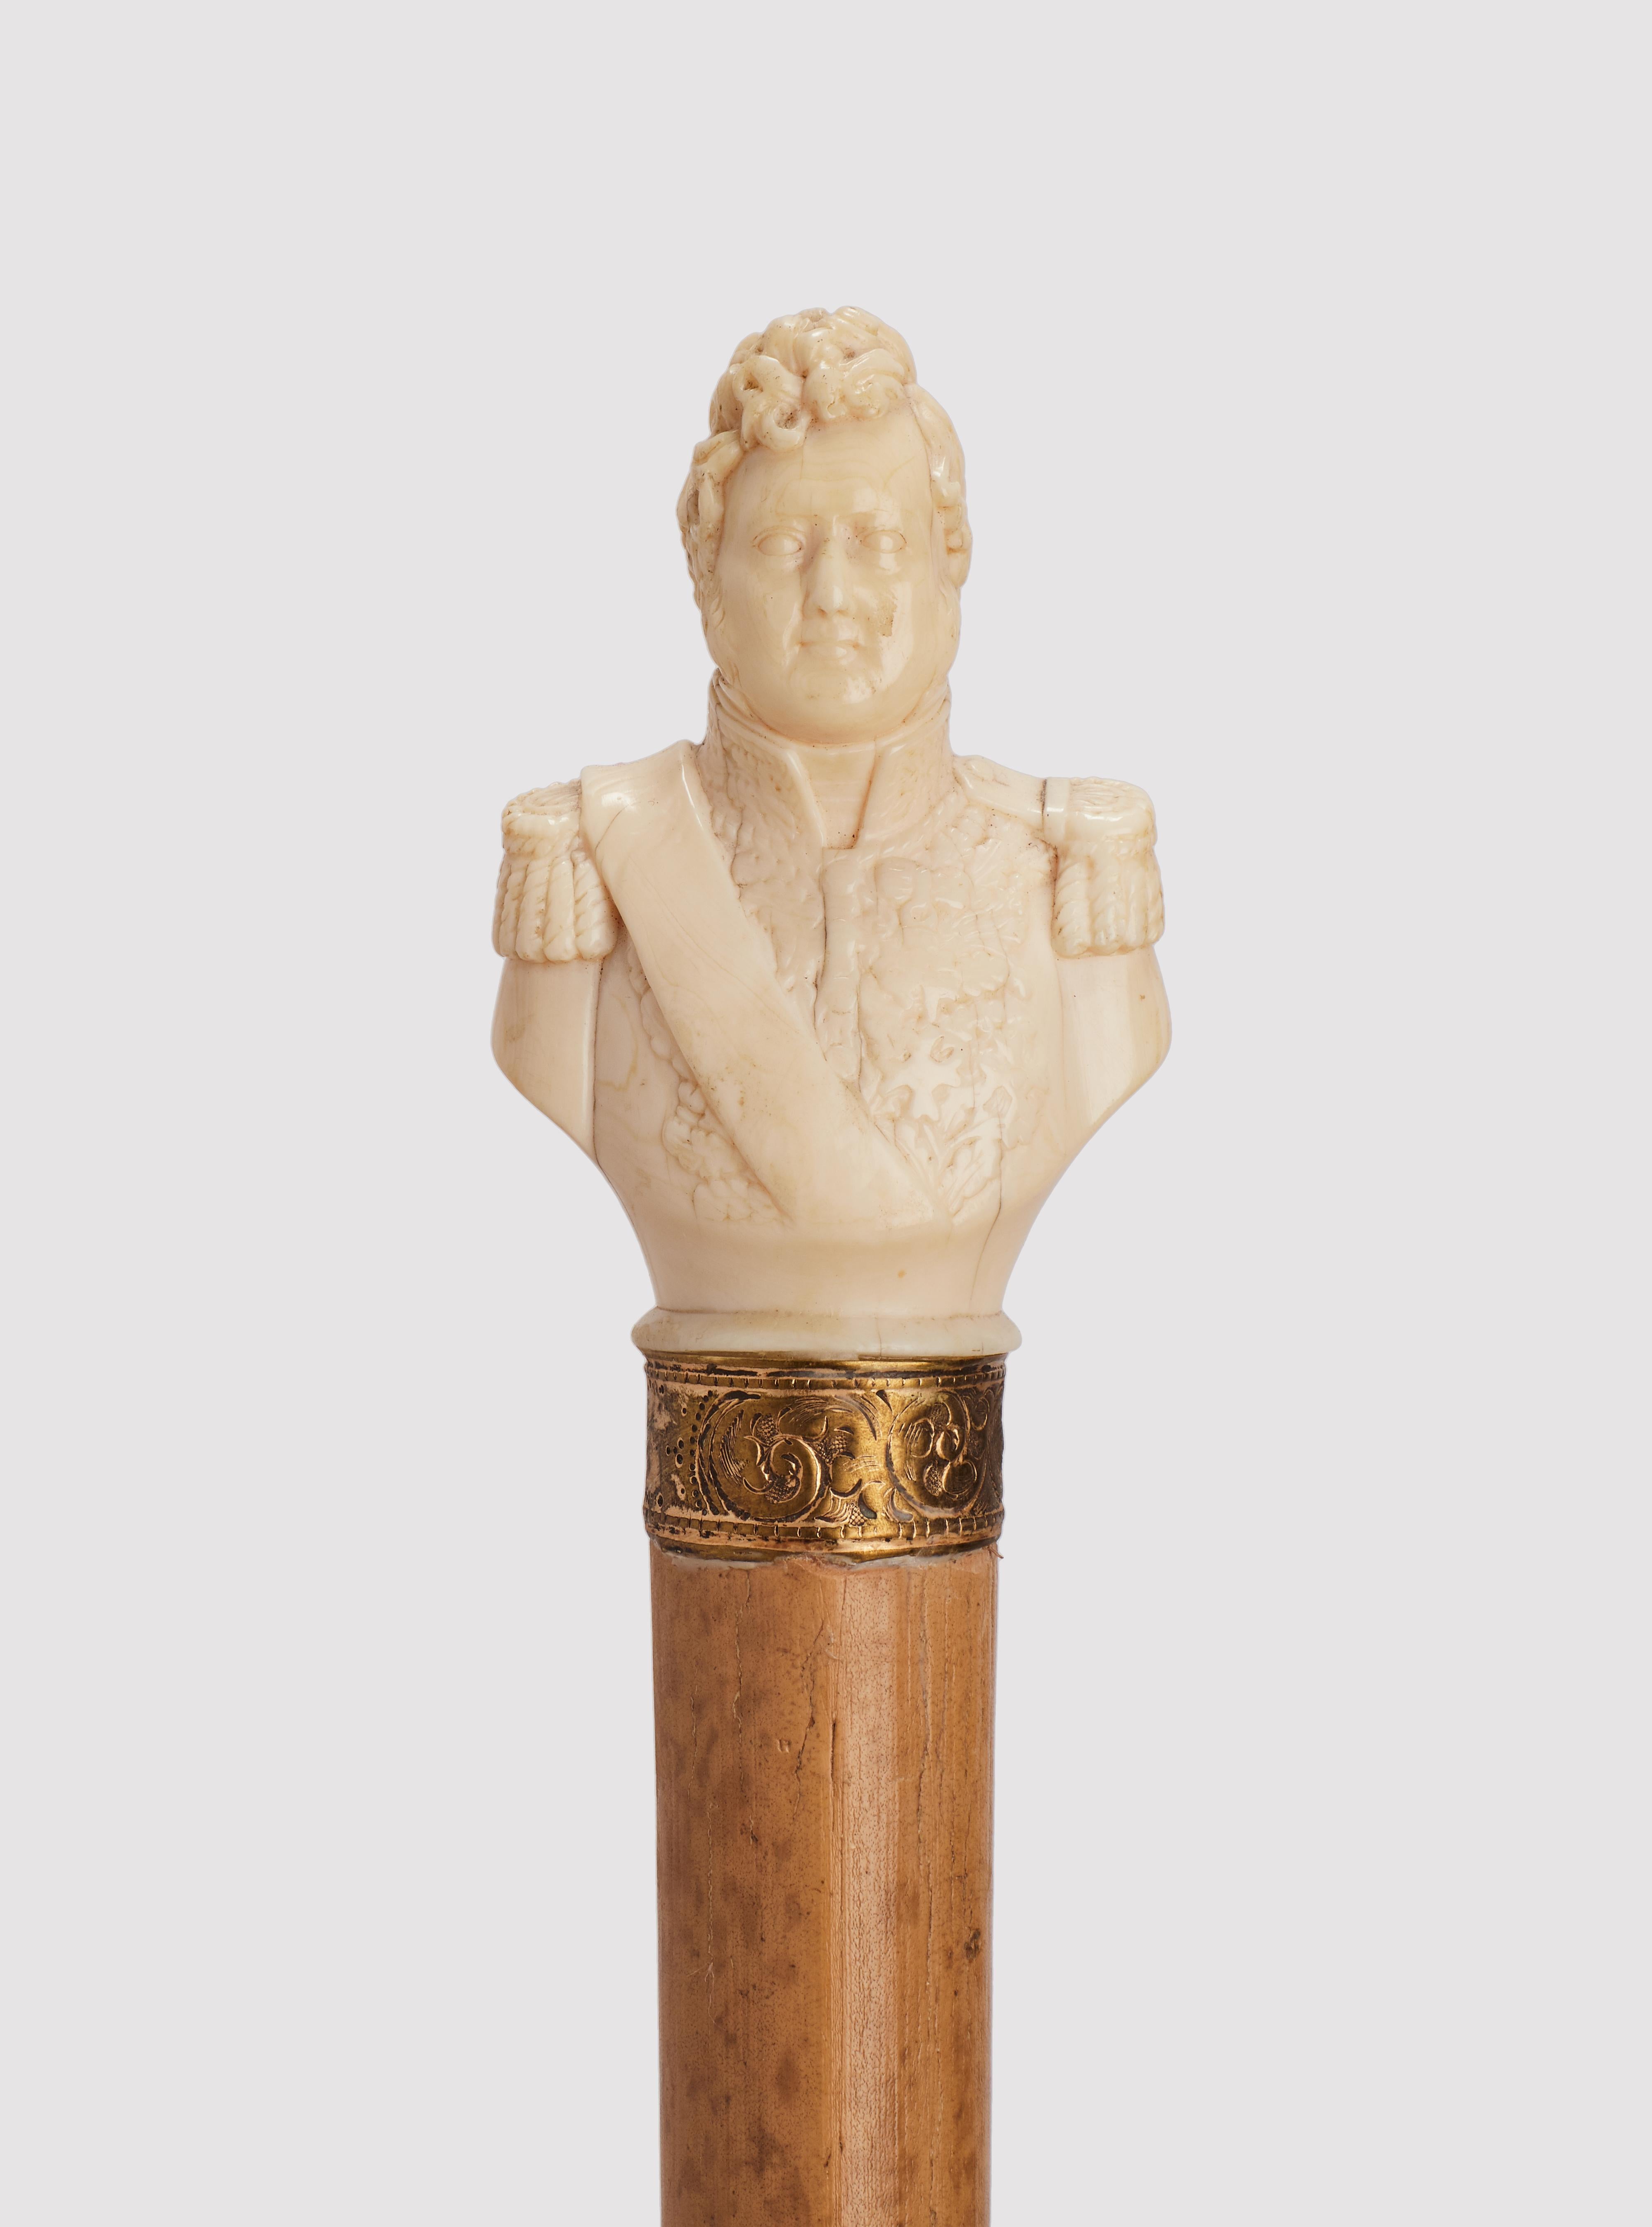 Canne : manche en ivoire sculpté représentant un portrait raffiné de Louis Philippe, roi de France. Arbre en bois de Malacca. Bague gravée en argent doré. Virole en métal. France vers 1870.                                                            